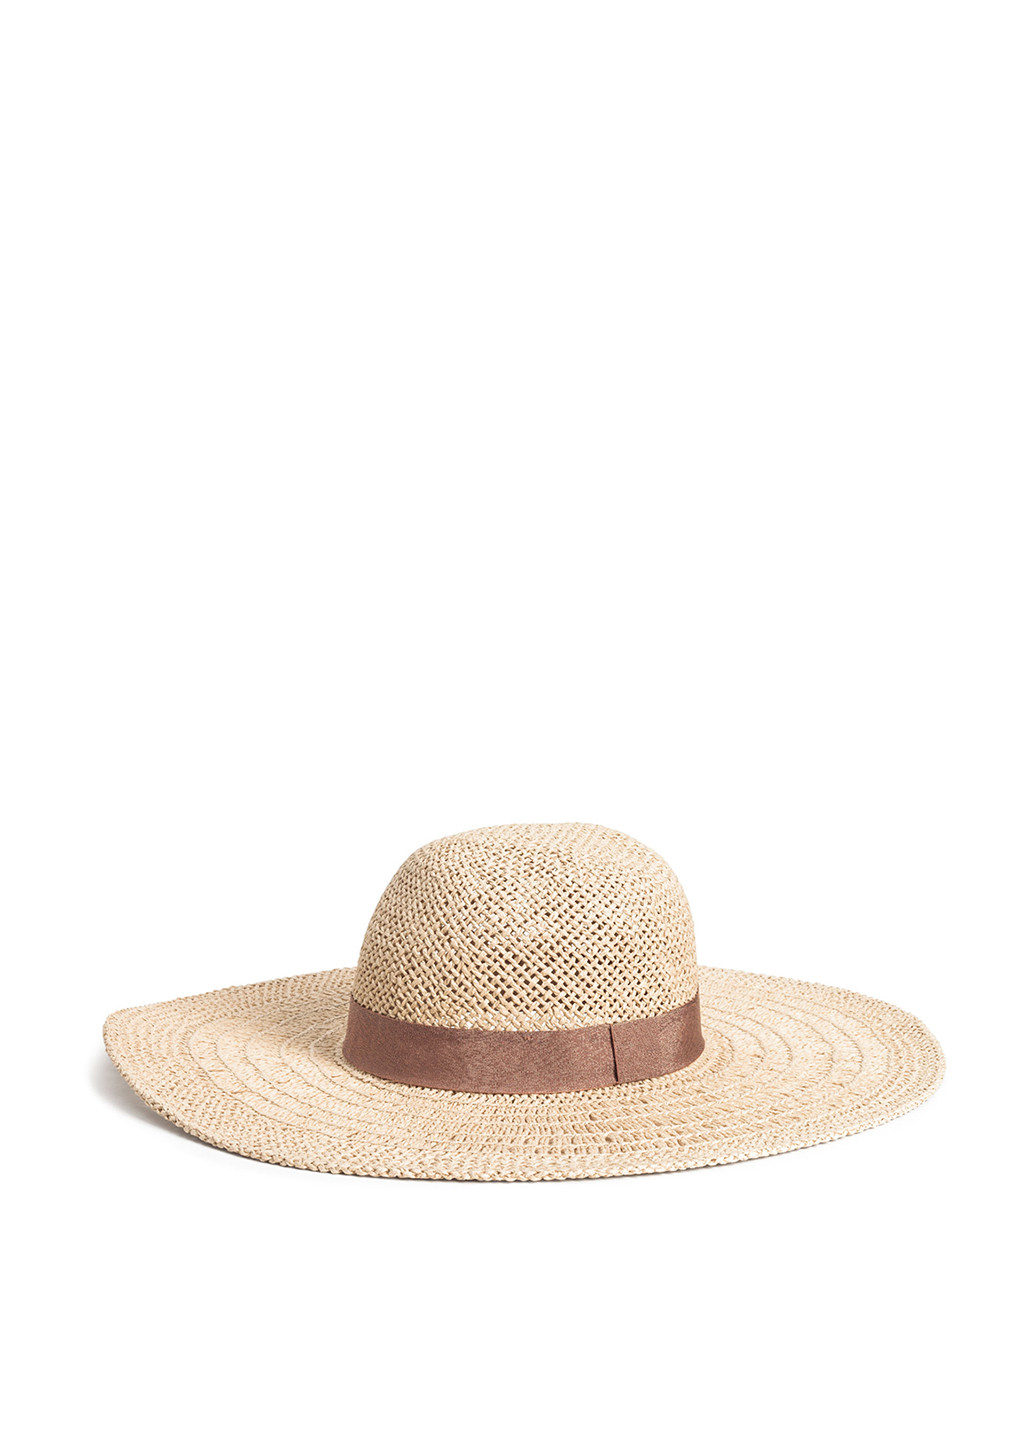 Шляпа H&M широкополая однотонная бежевая кэжуал искусственная солома